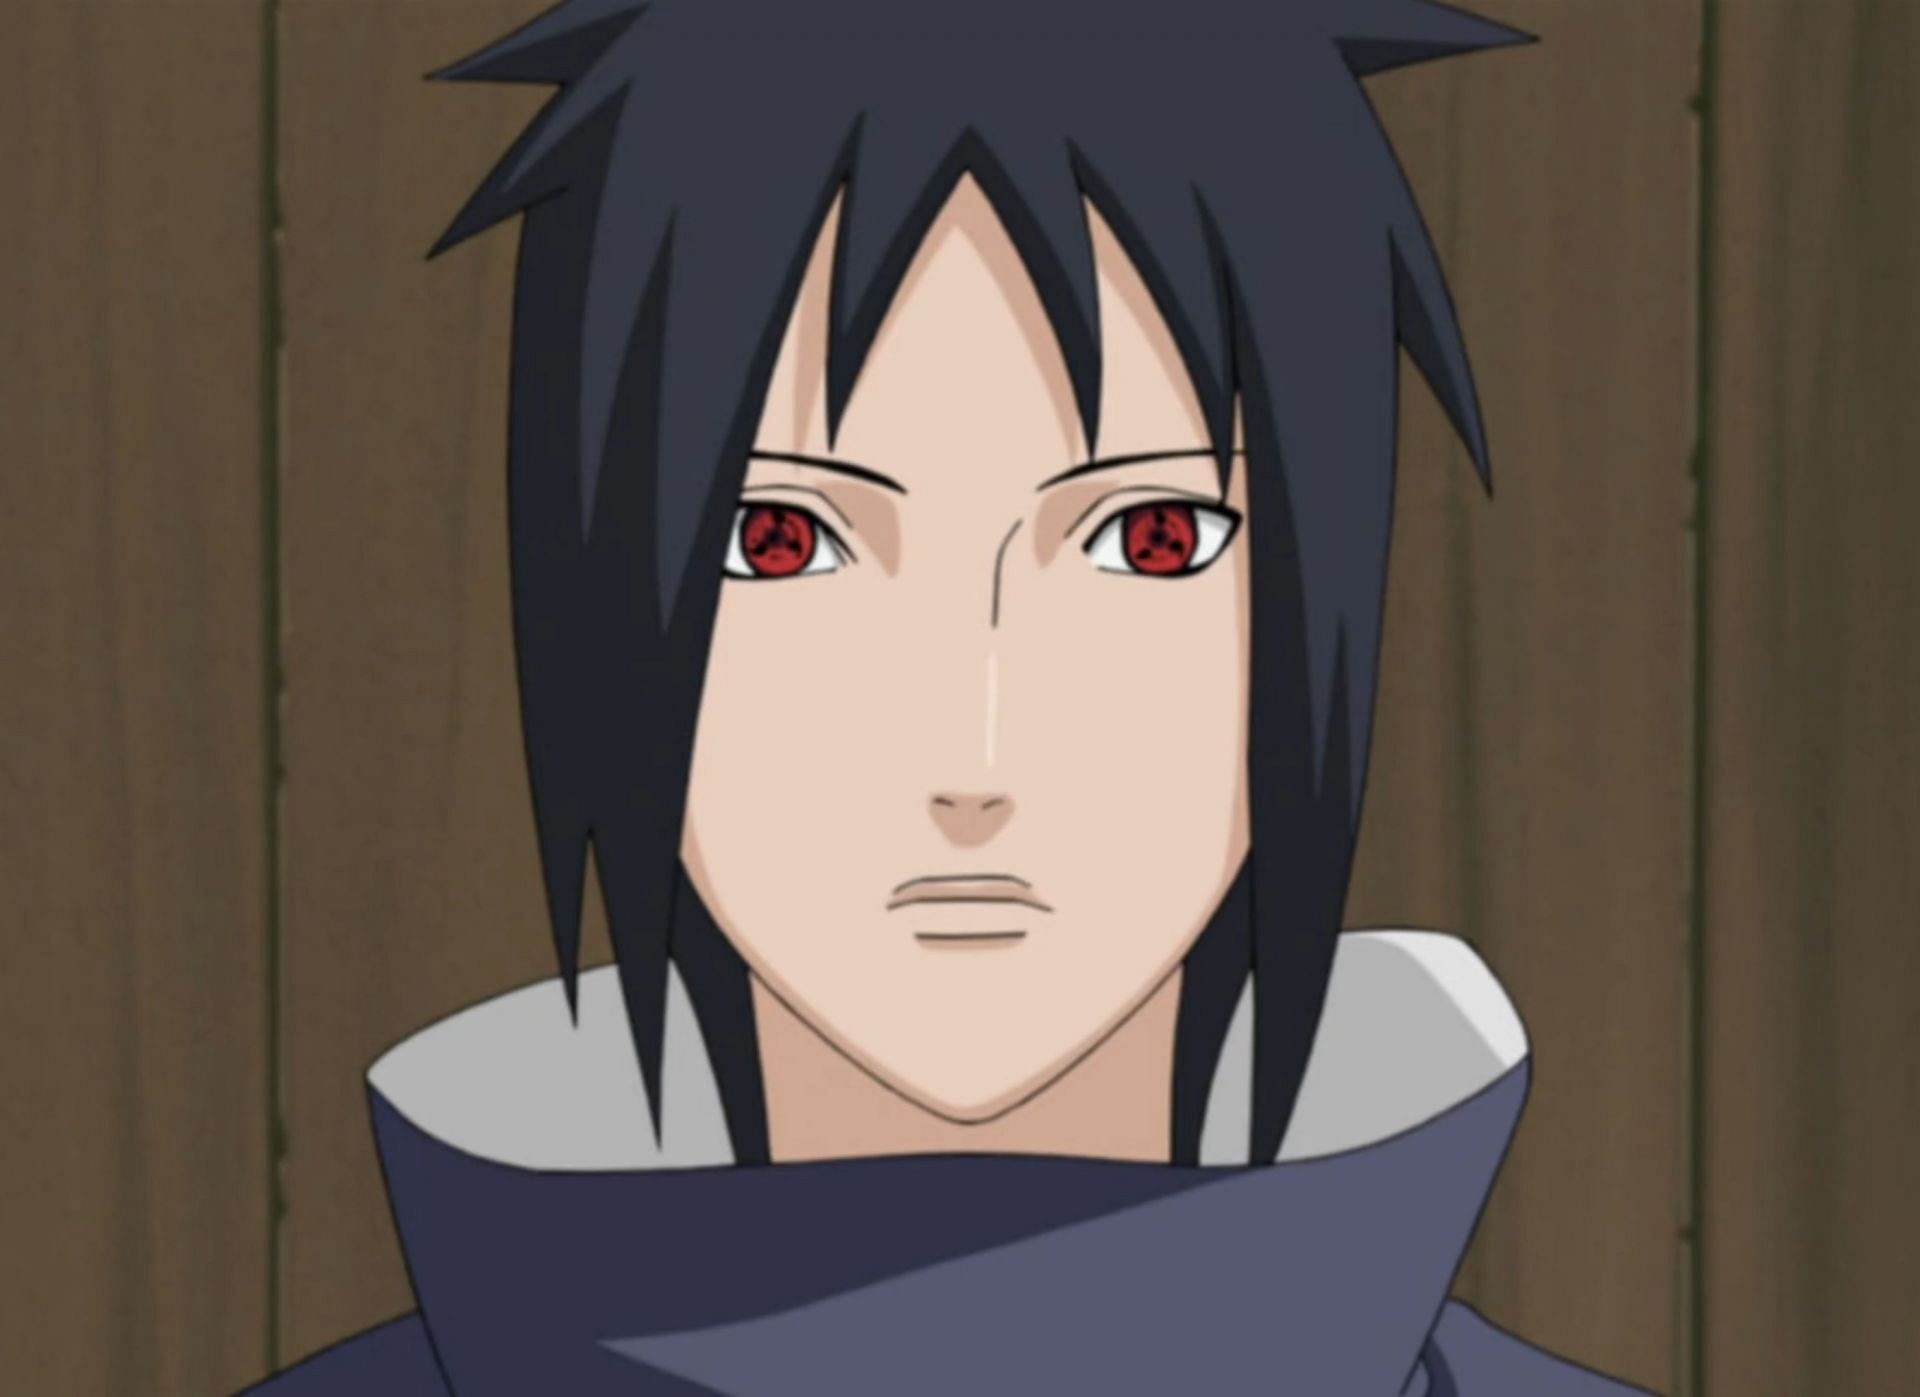 Izuna as seen in the anime (Image via Naruto)